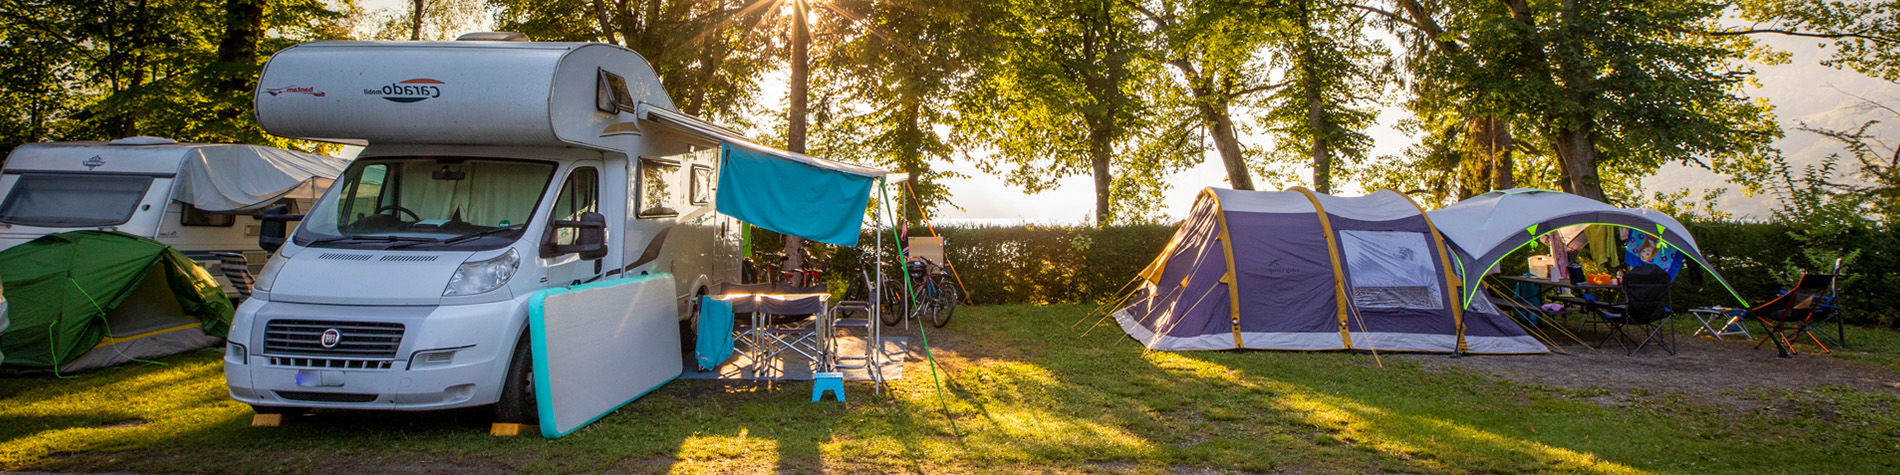 Aktuelle Zubehör-Angeboten für Camping und Caravaning.